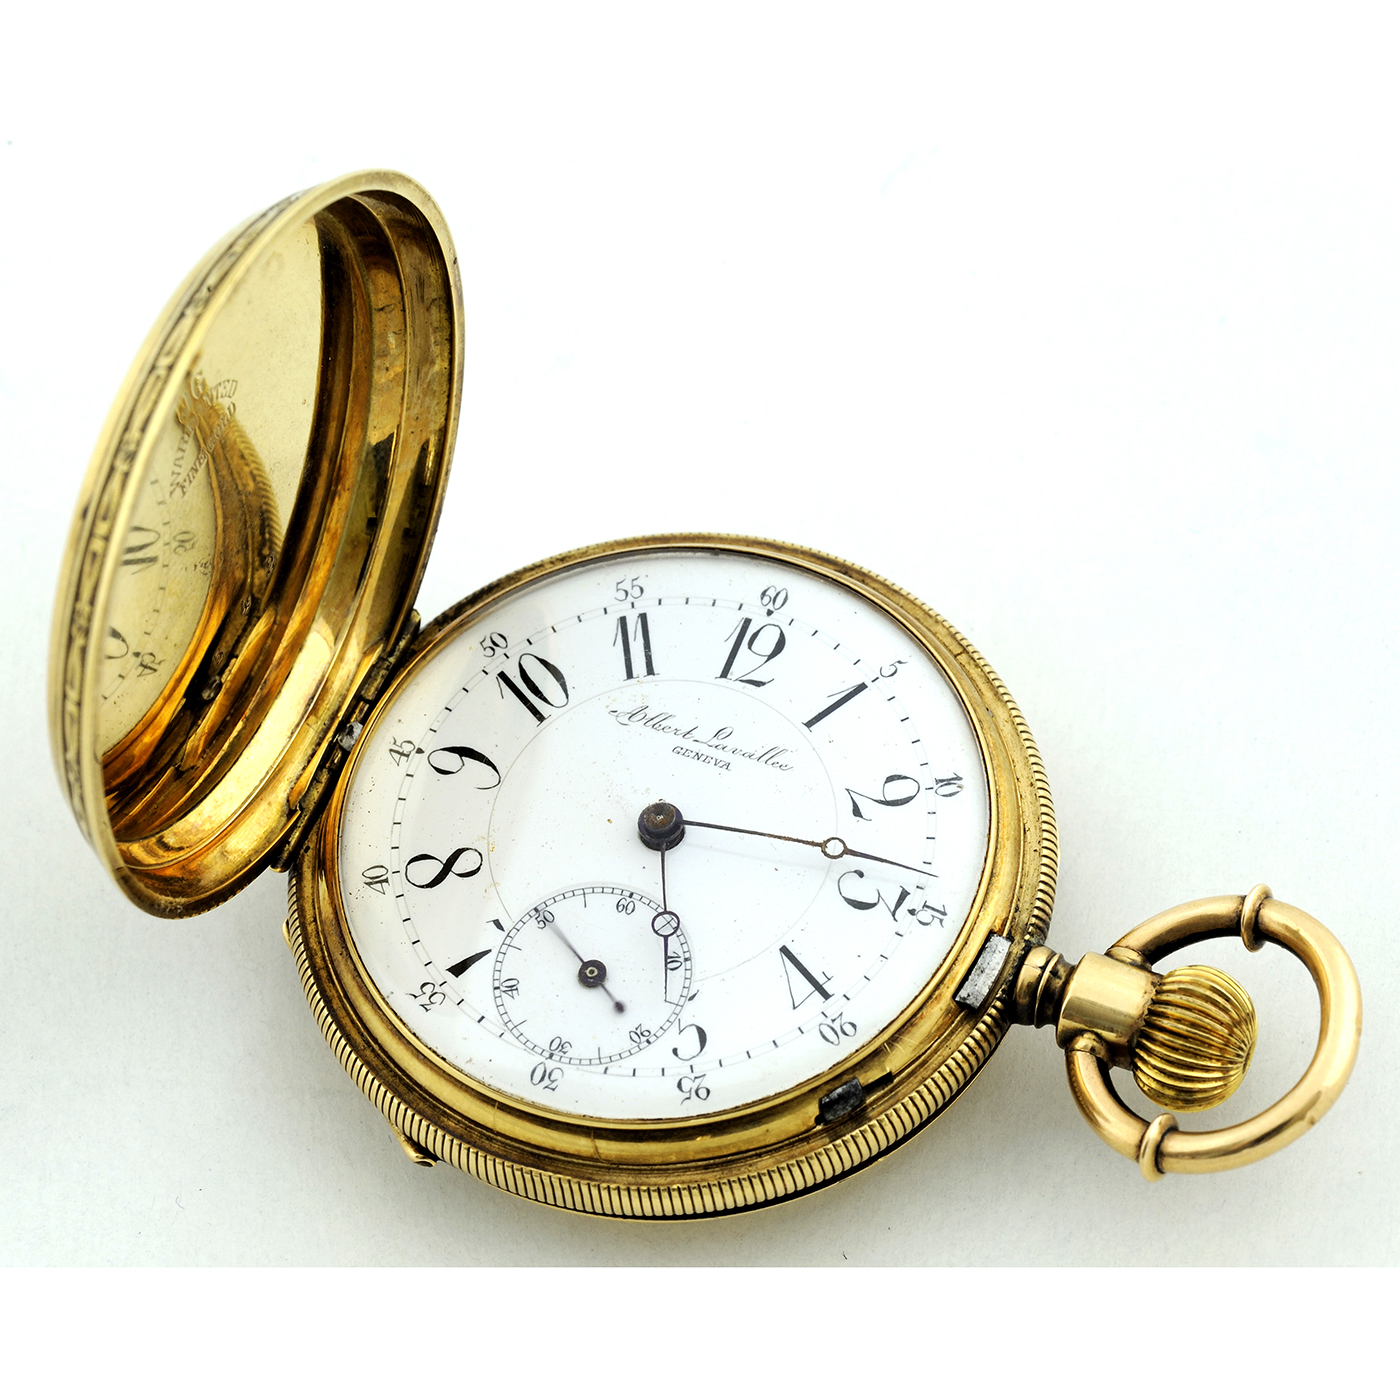 ALBERT LAVALLEE (GENEVA). Reloj de Bolsillo para Dama, saboneta y remontoir. Ca. 1860.